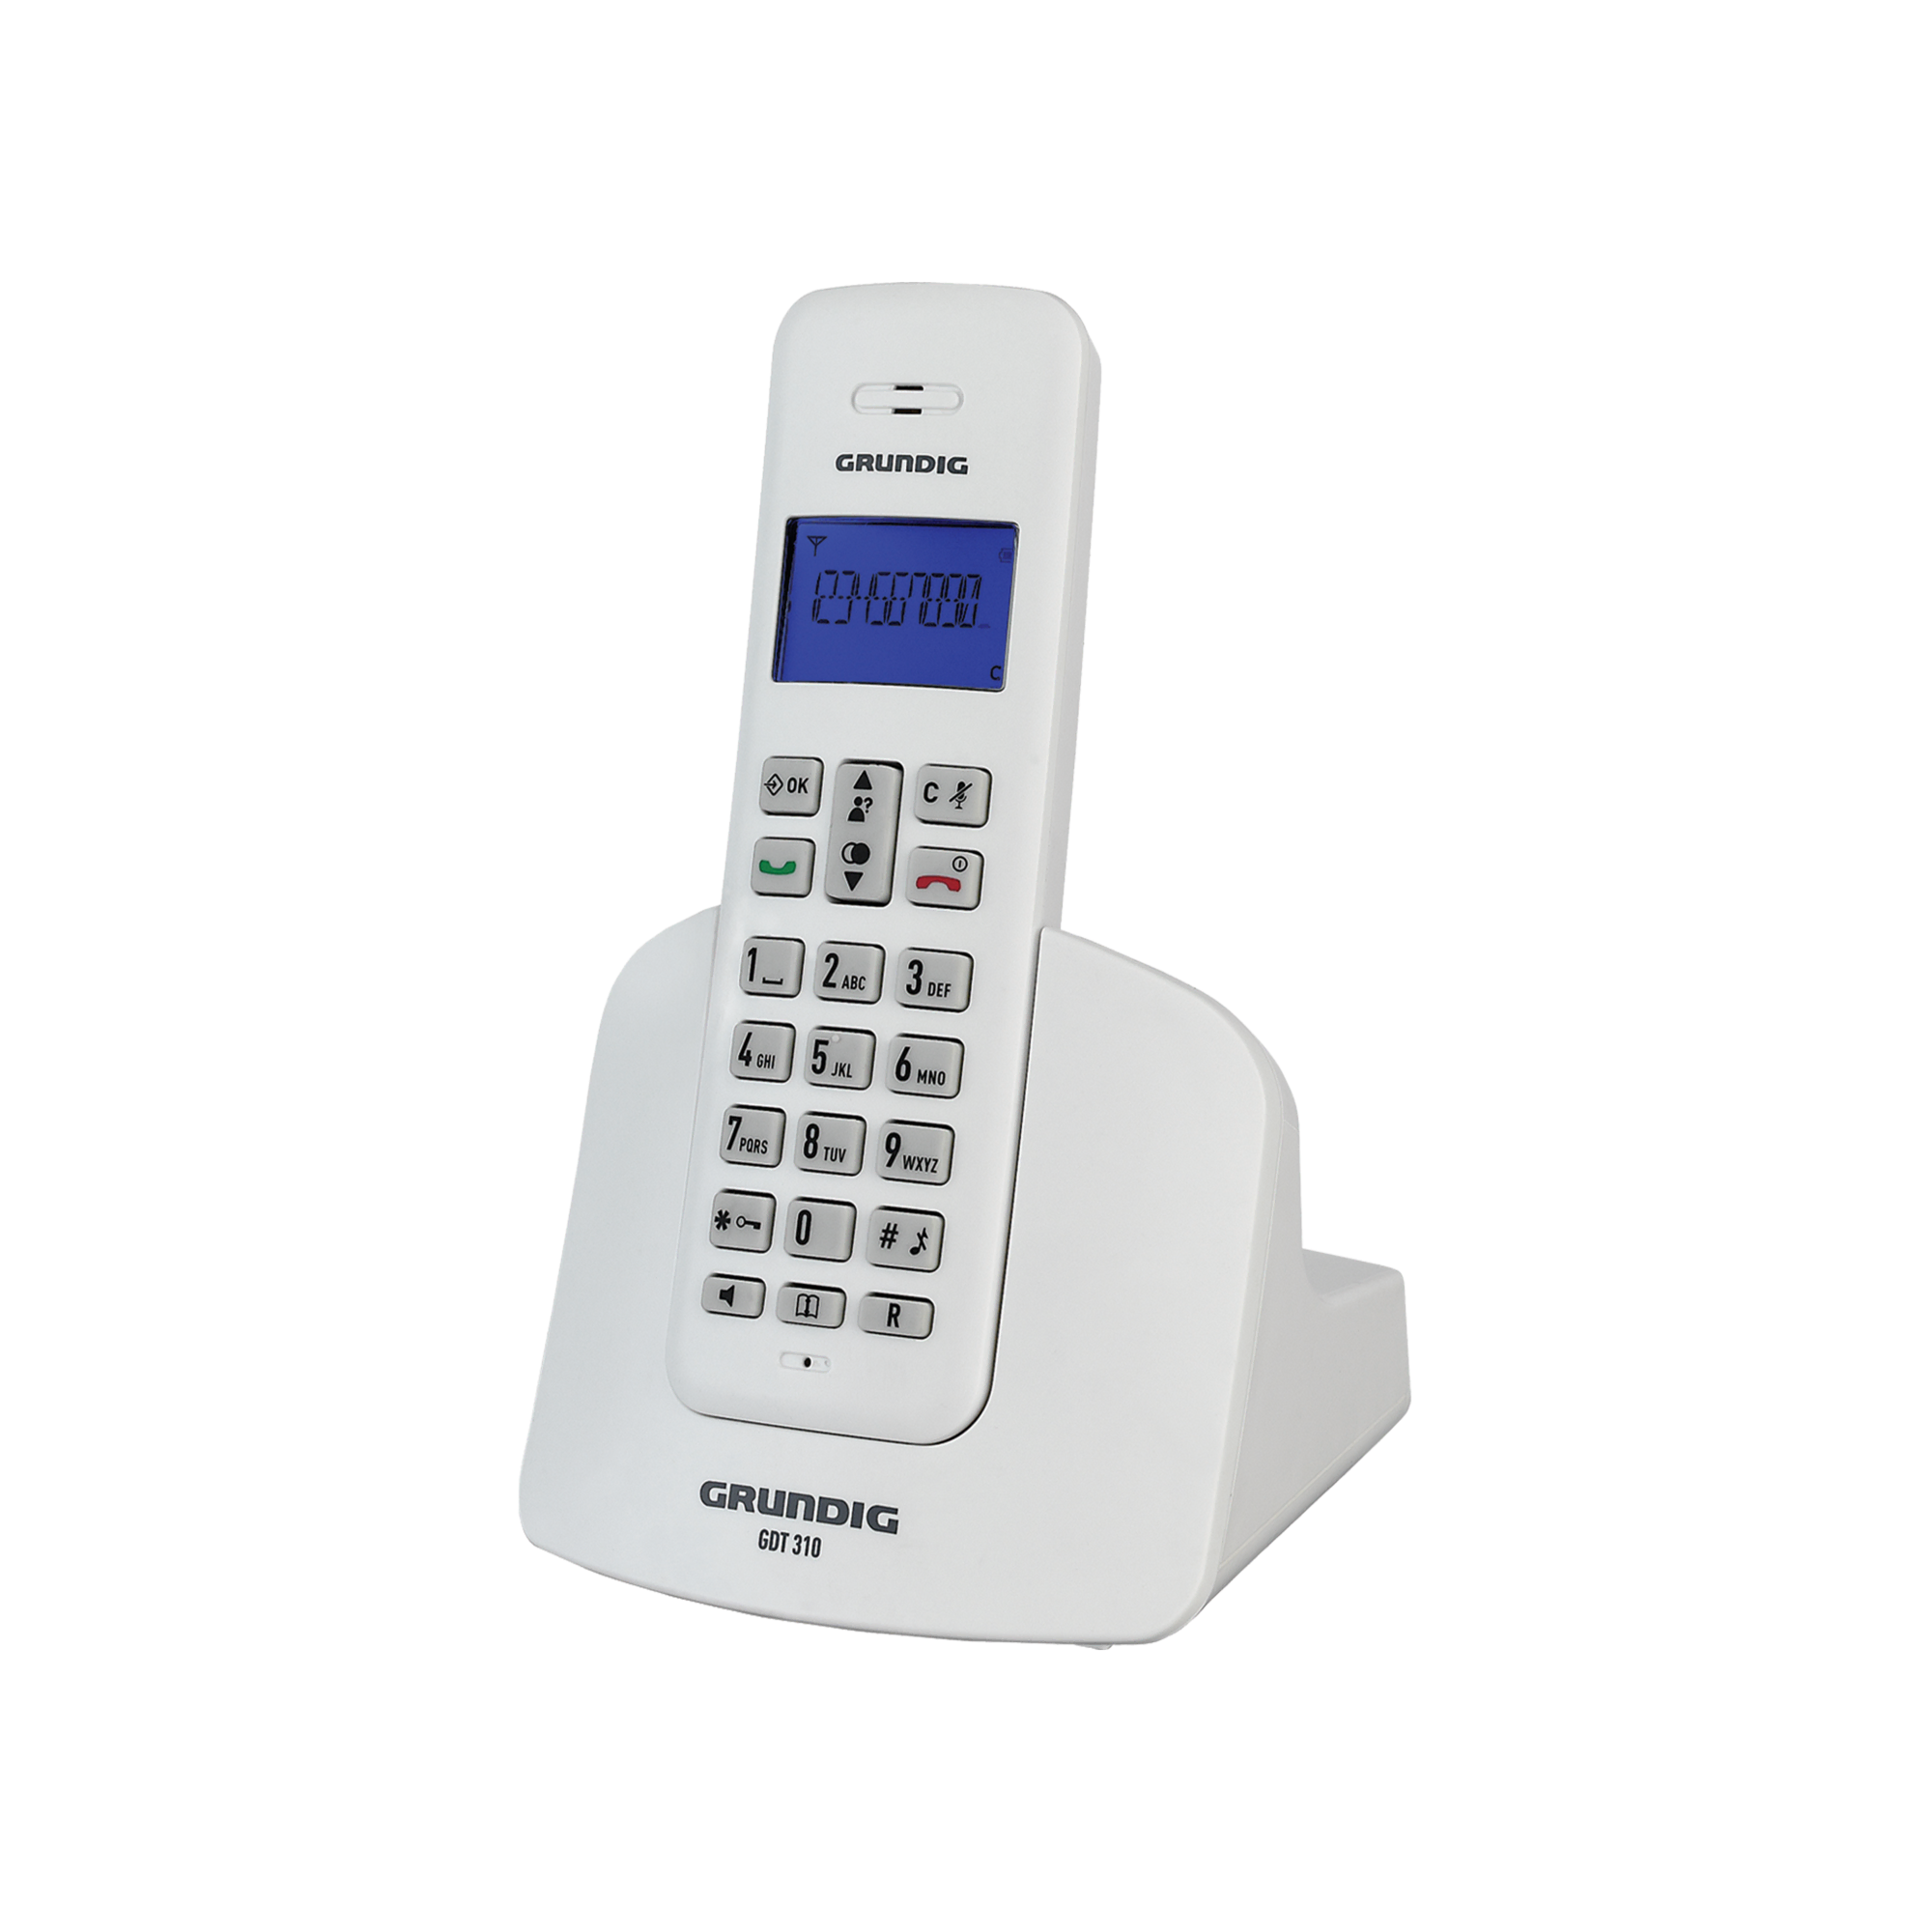 Grundig GDT 310 Beyaz Diğer Telefon Modelleri